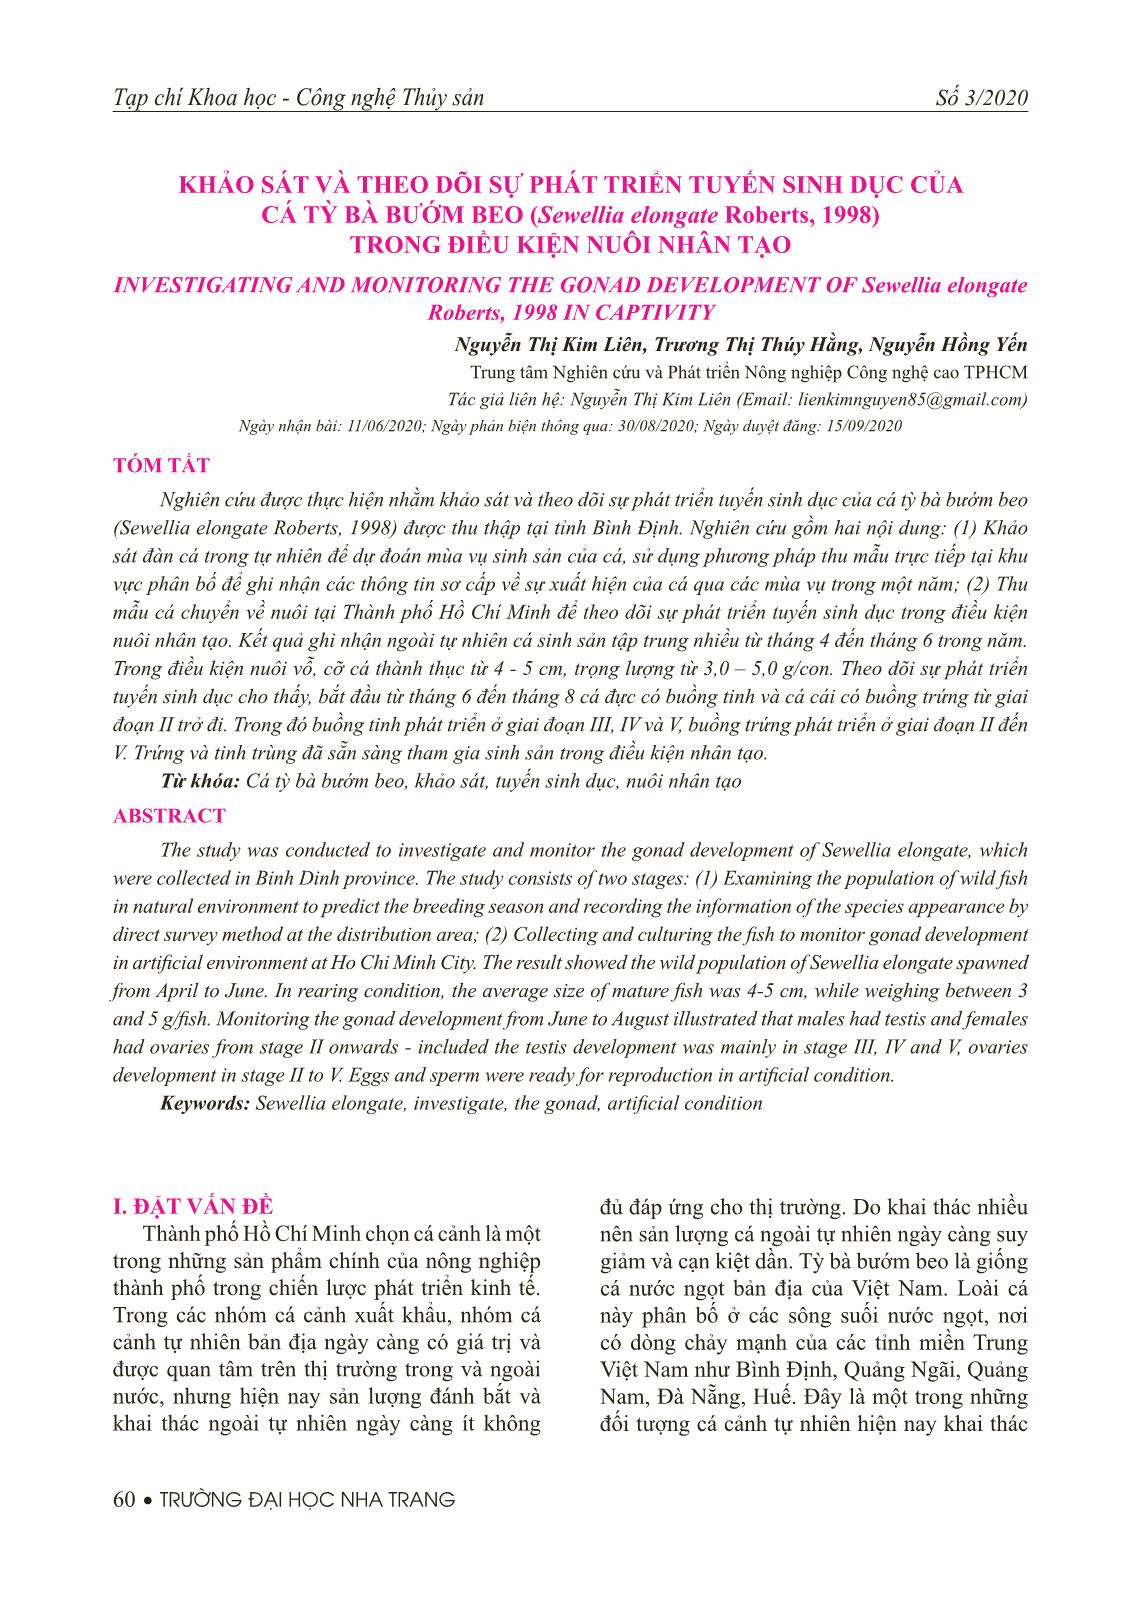 Khảo sát và theo dõi sự phát triển tuyến sinh dục của cá tỳ bà bướm beo (Sewellia elongate Roberts, 1998) trong điều kiện nuôi nhân tạo trang 1